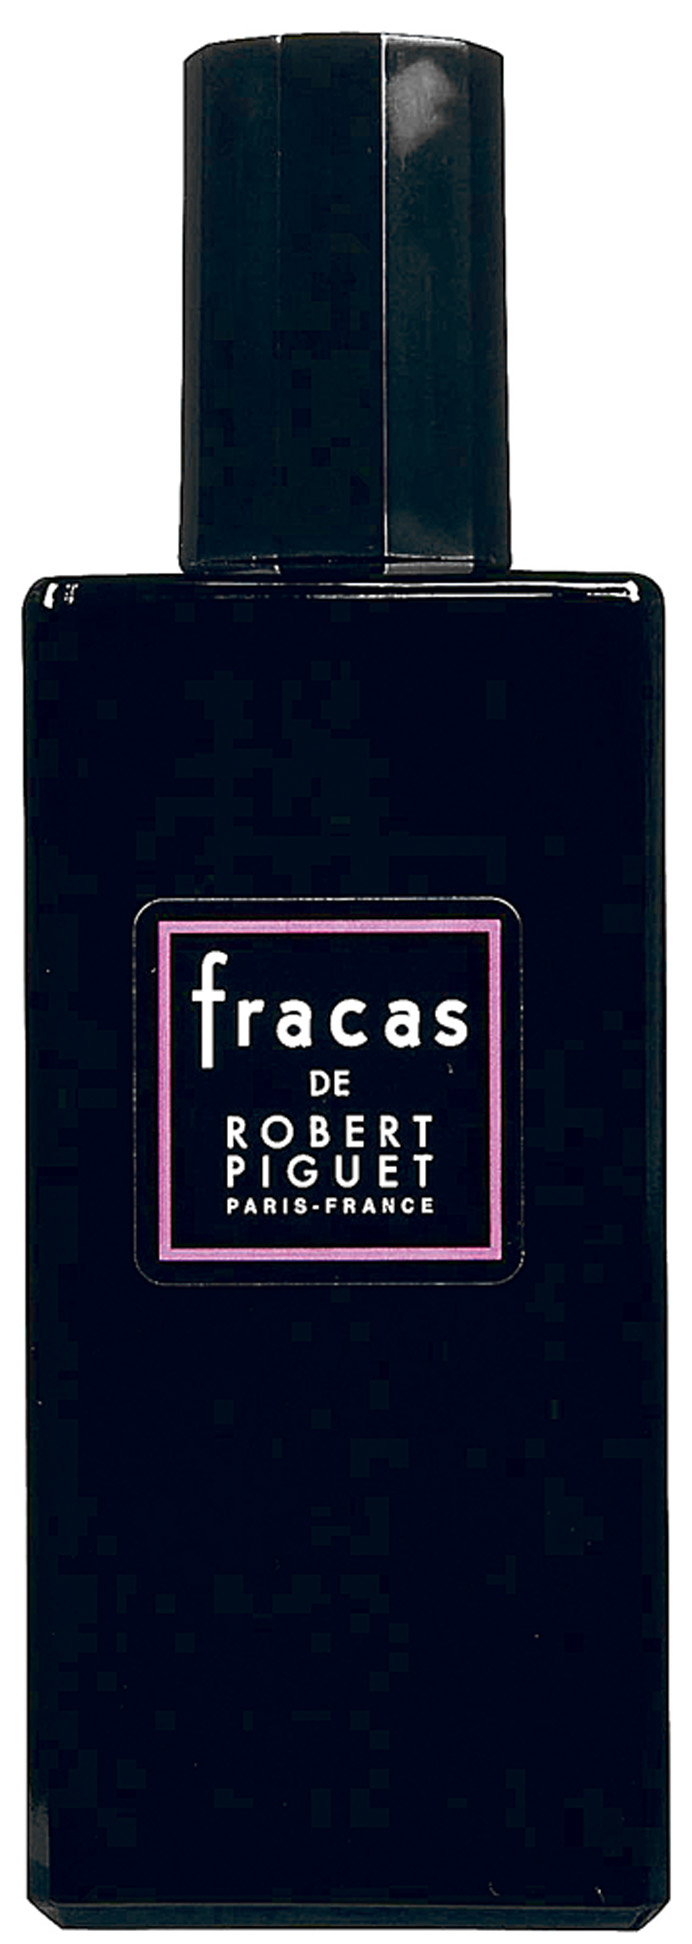 Essência - “Meu xodó é o perfume Fracas, de Robert Piguet. Ele é raro de encontrar. Tenho um frasco no banheiro e uma versão para viajar. Sempre que acho, compro mais”